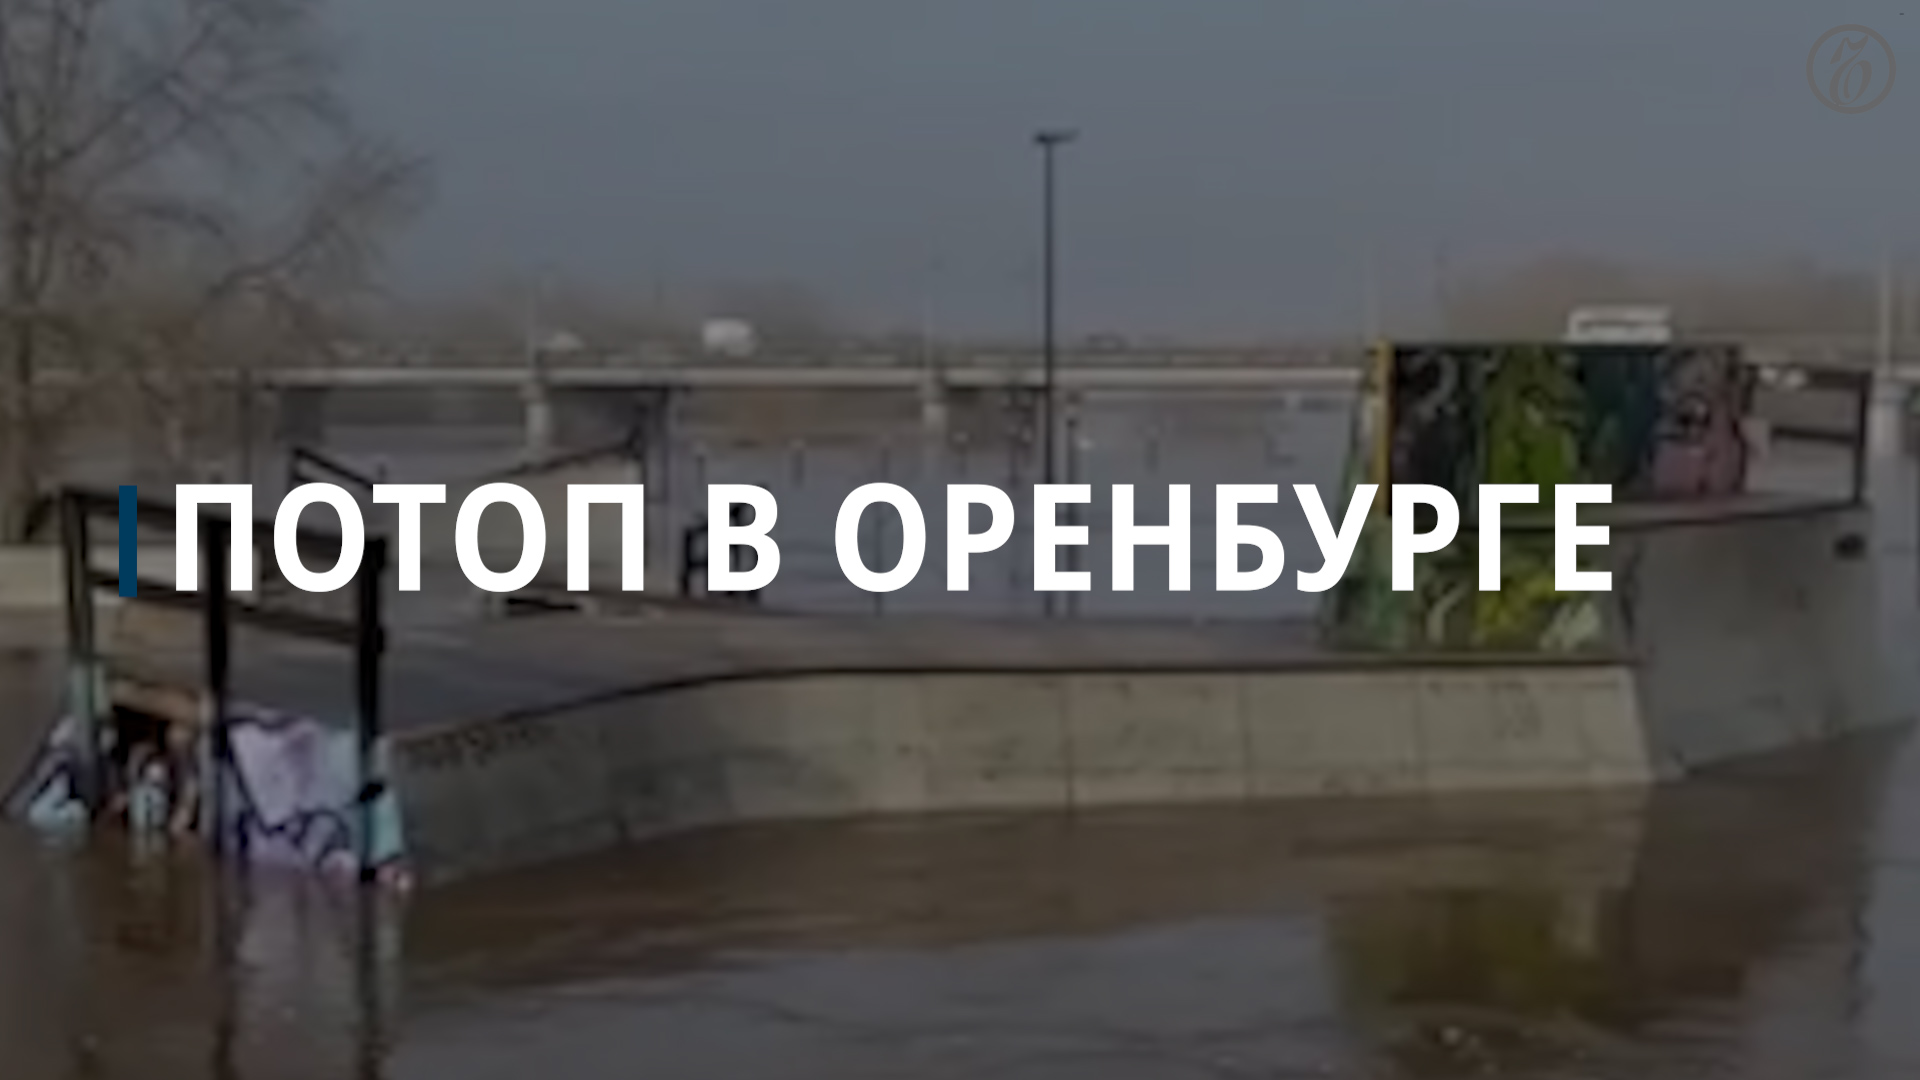 Уровень воды в Урале в Оренбурге поднялся до 10 м — Коммерсантъ